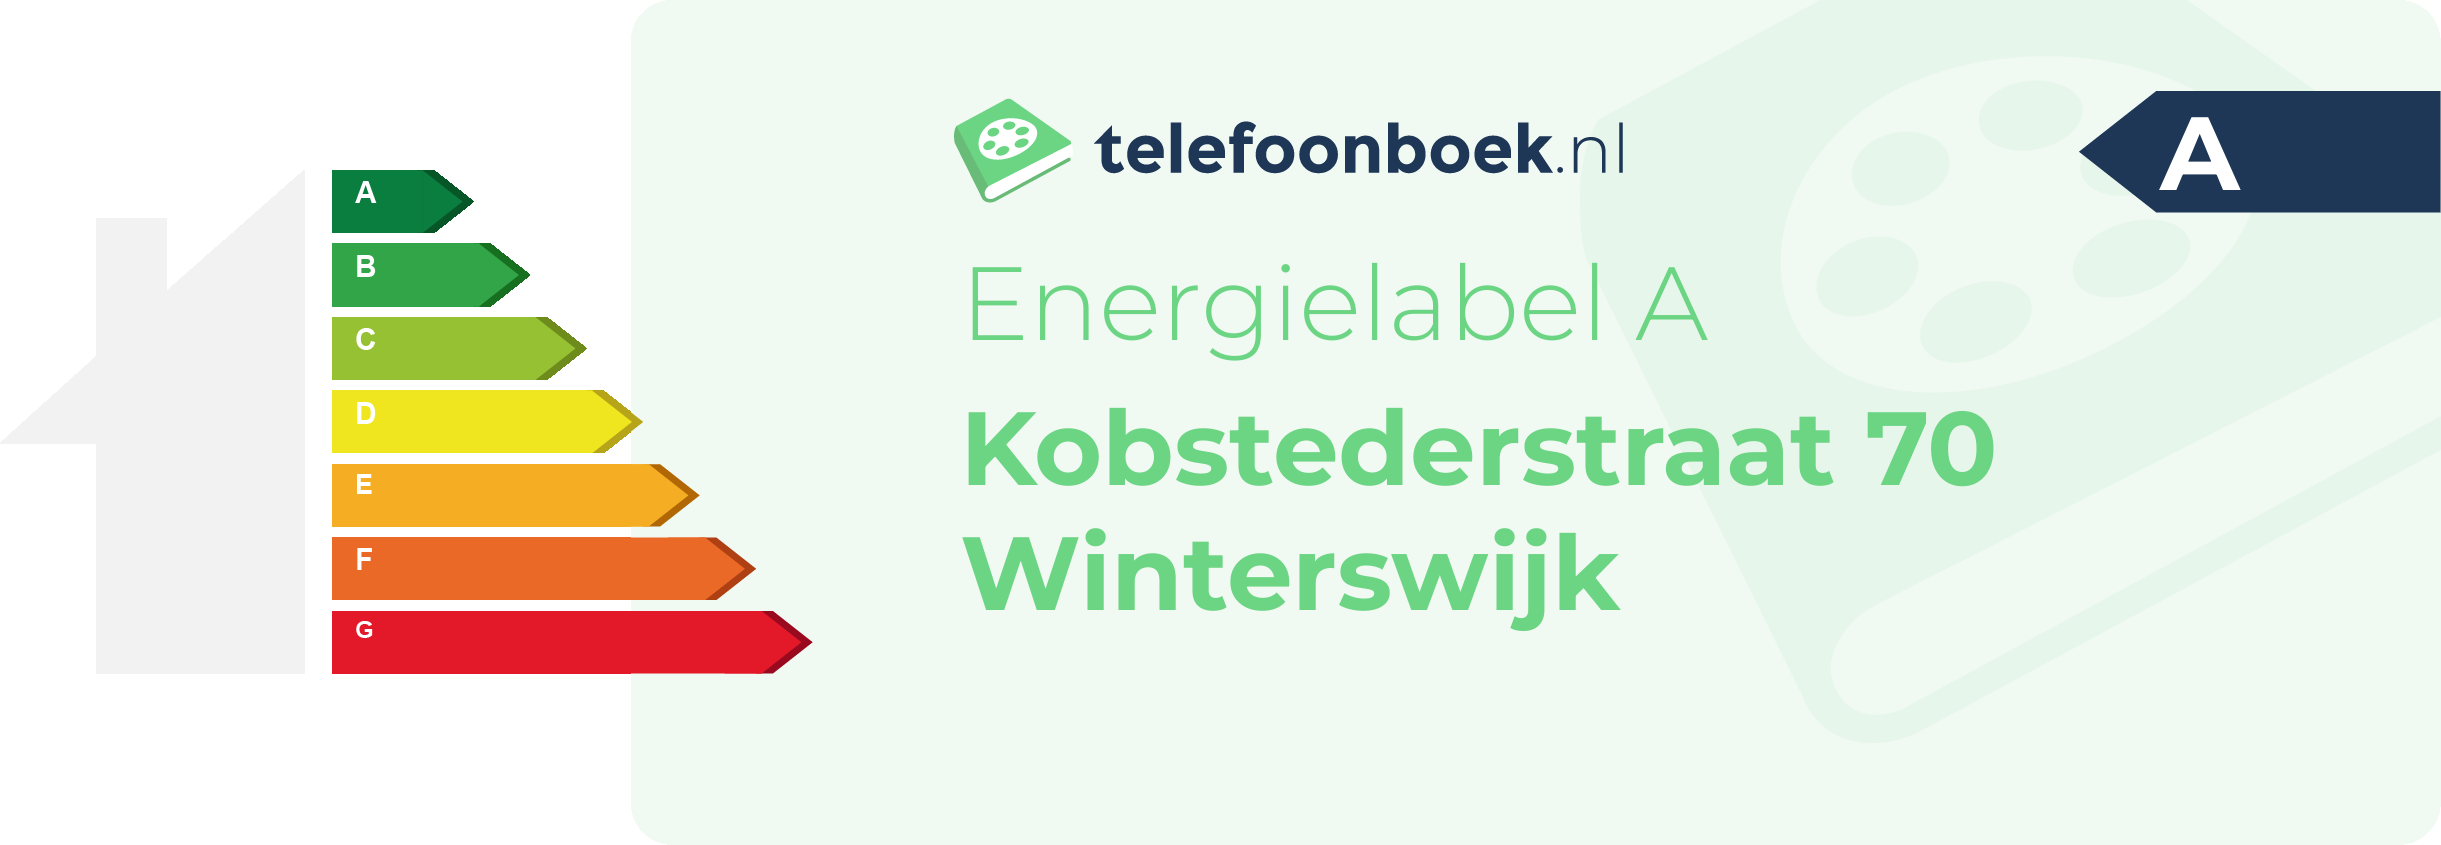 Energielabel Kobstederstraat 70 Winterswijk